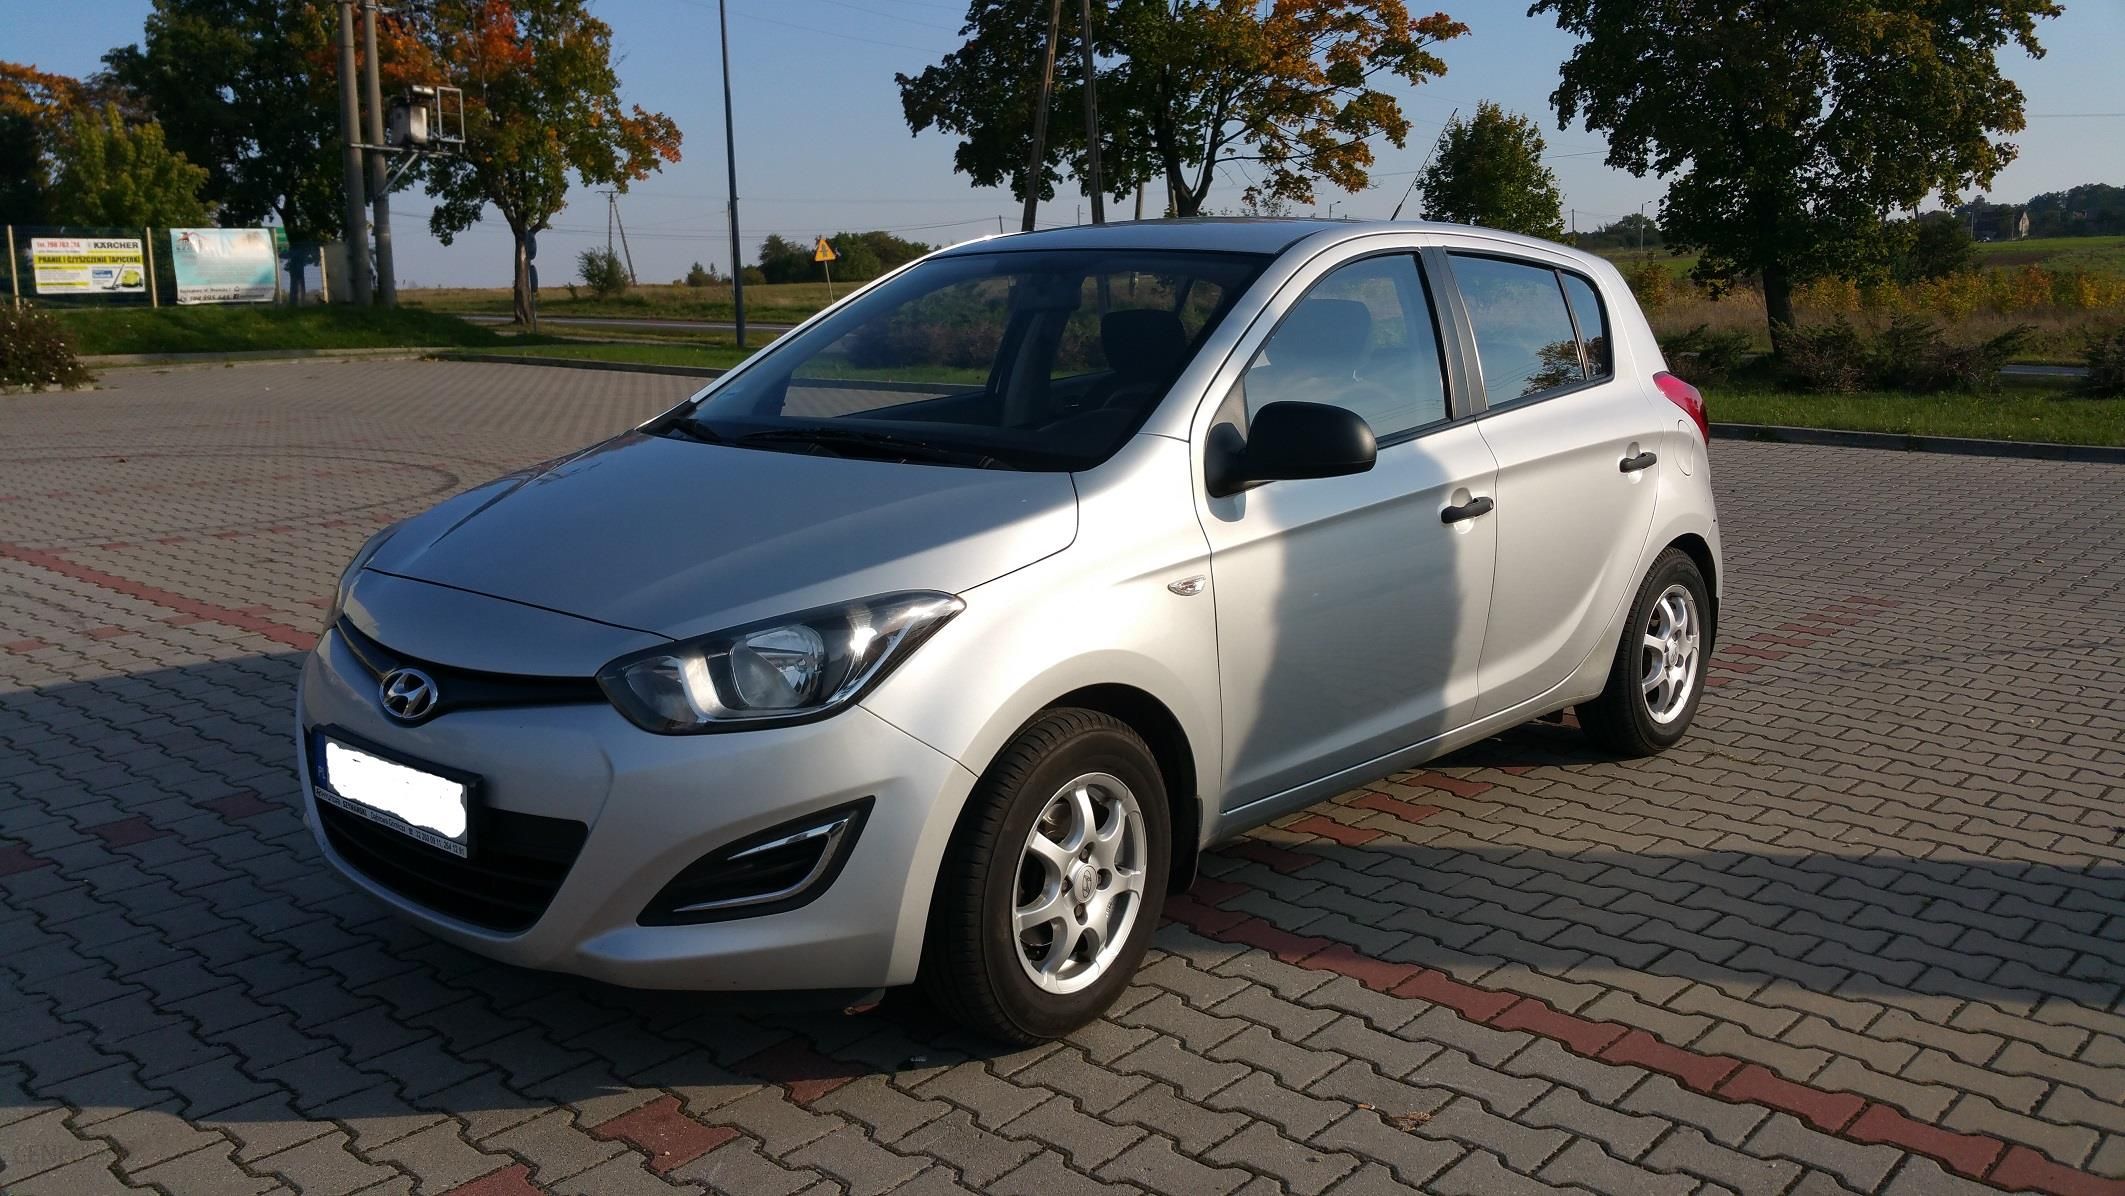 Hyundai i20 I 2014 85KM srebrny Opinie i ceny na Ceneo.pl